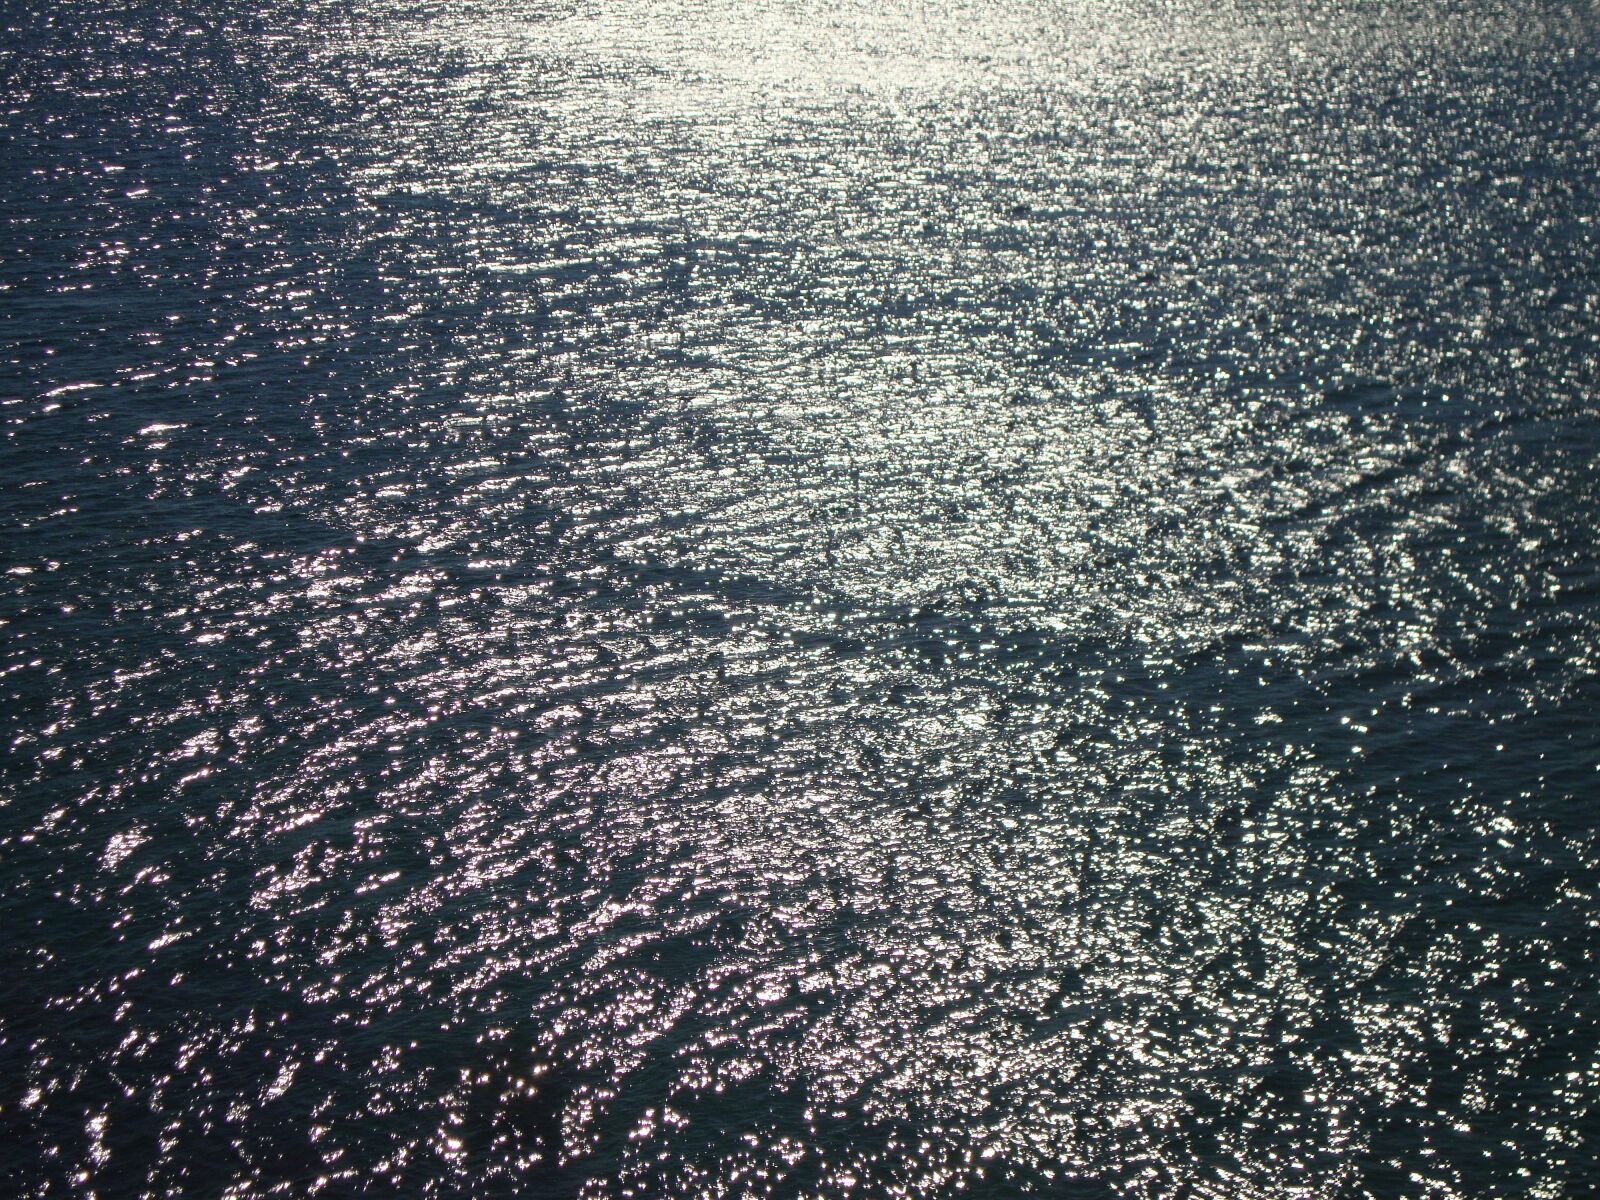 Sony Cyber-shot DSC-W220 sample photo. Sea, sun, reflection photography